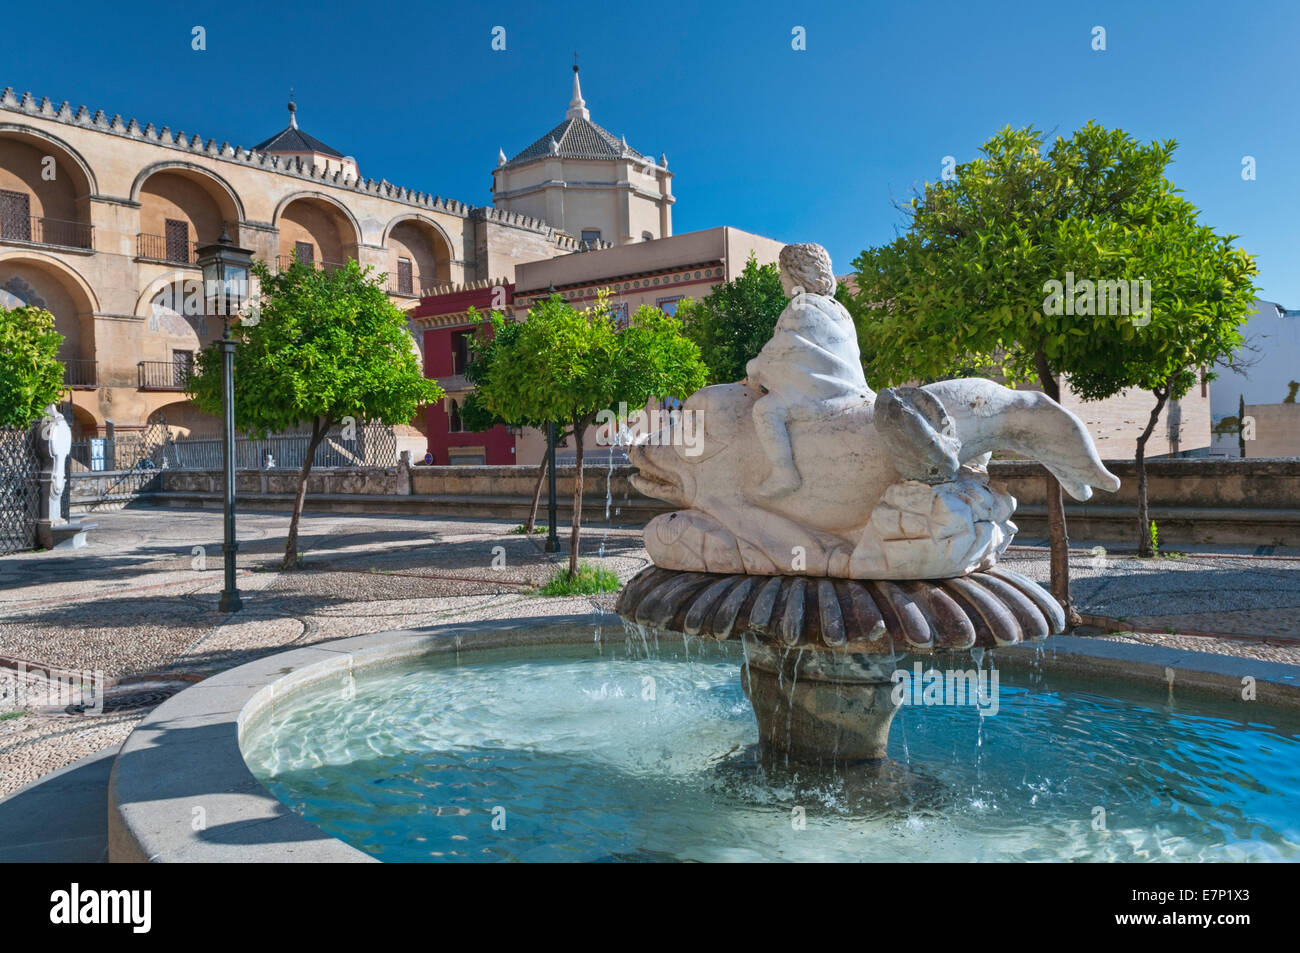 Fountain in Plaza del Triumfo Cordoba Andalusia Spain Stock Photo